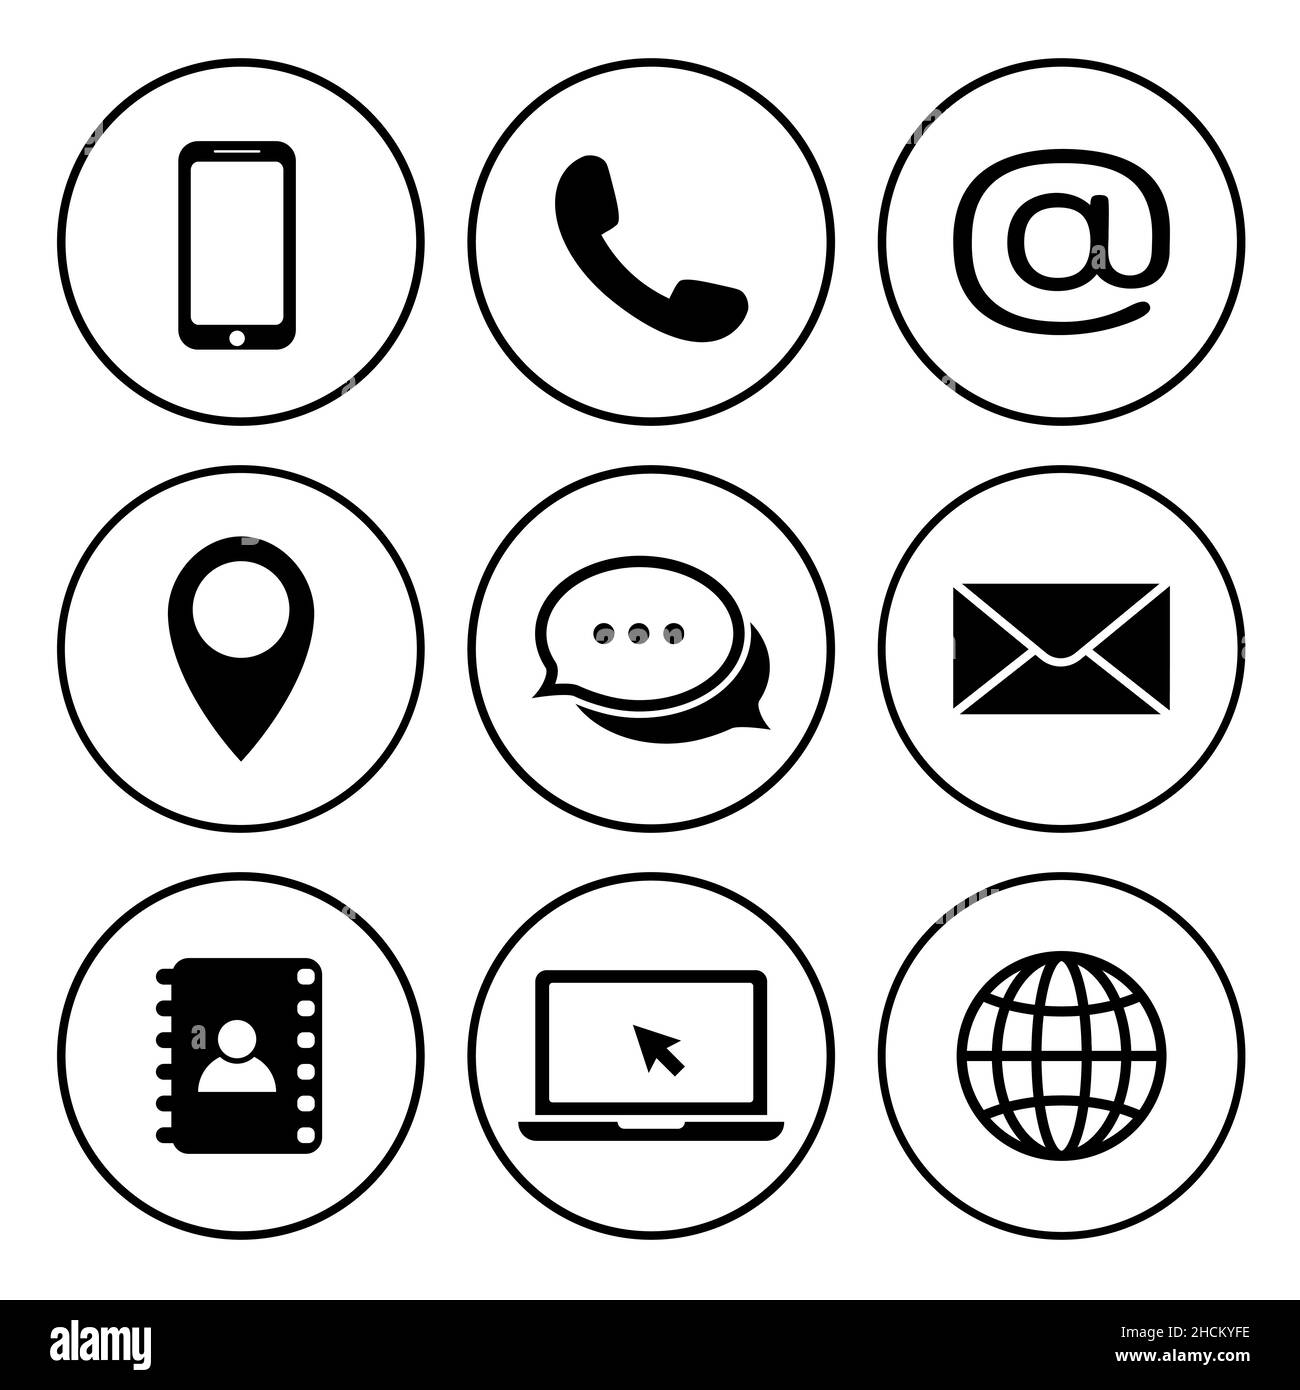 Kontaktieren Sie uns Symbole im Kreis. Sammlung von Kommunikationssymbolen. Symbole für Kontakt, E-Mail, Mobiltelefon, Nachrichten. Telefon, Mobiltelefon, Nachricht, Standort Stock Vektor